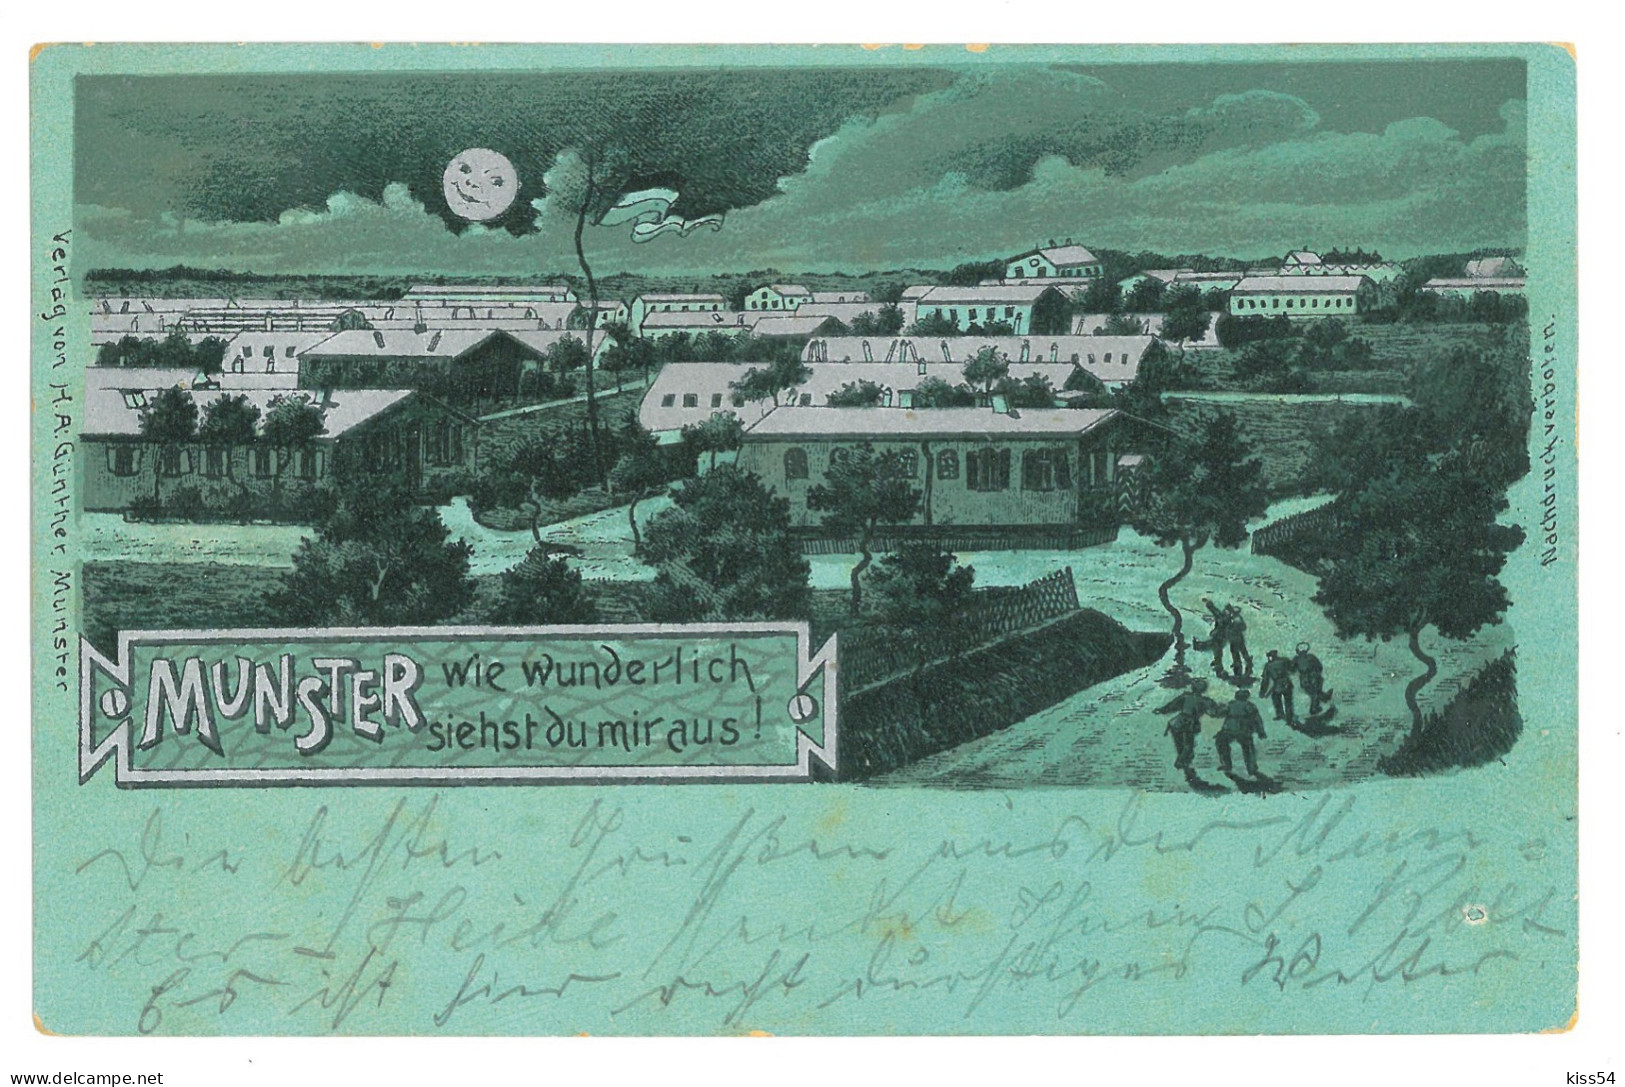 GER 34 - 16992 MUNSTER, Litho, Germany - Old Postcard - Used - 1904 - Munster